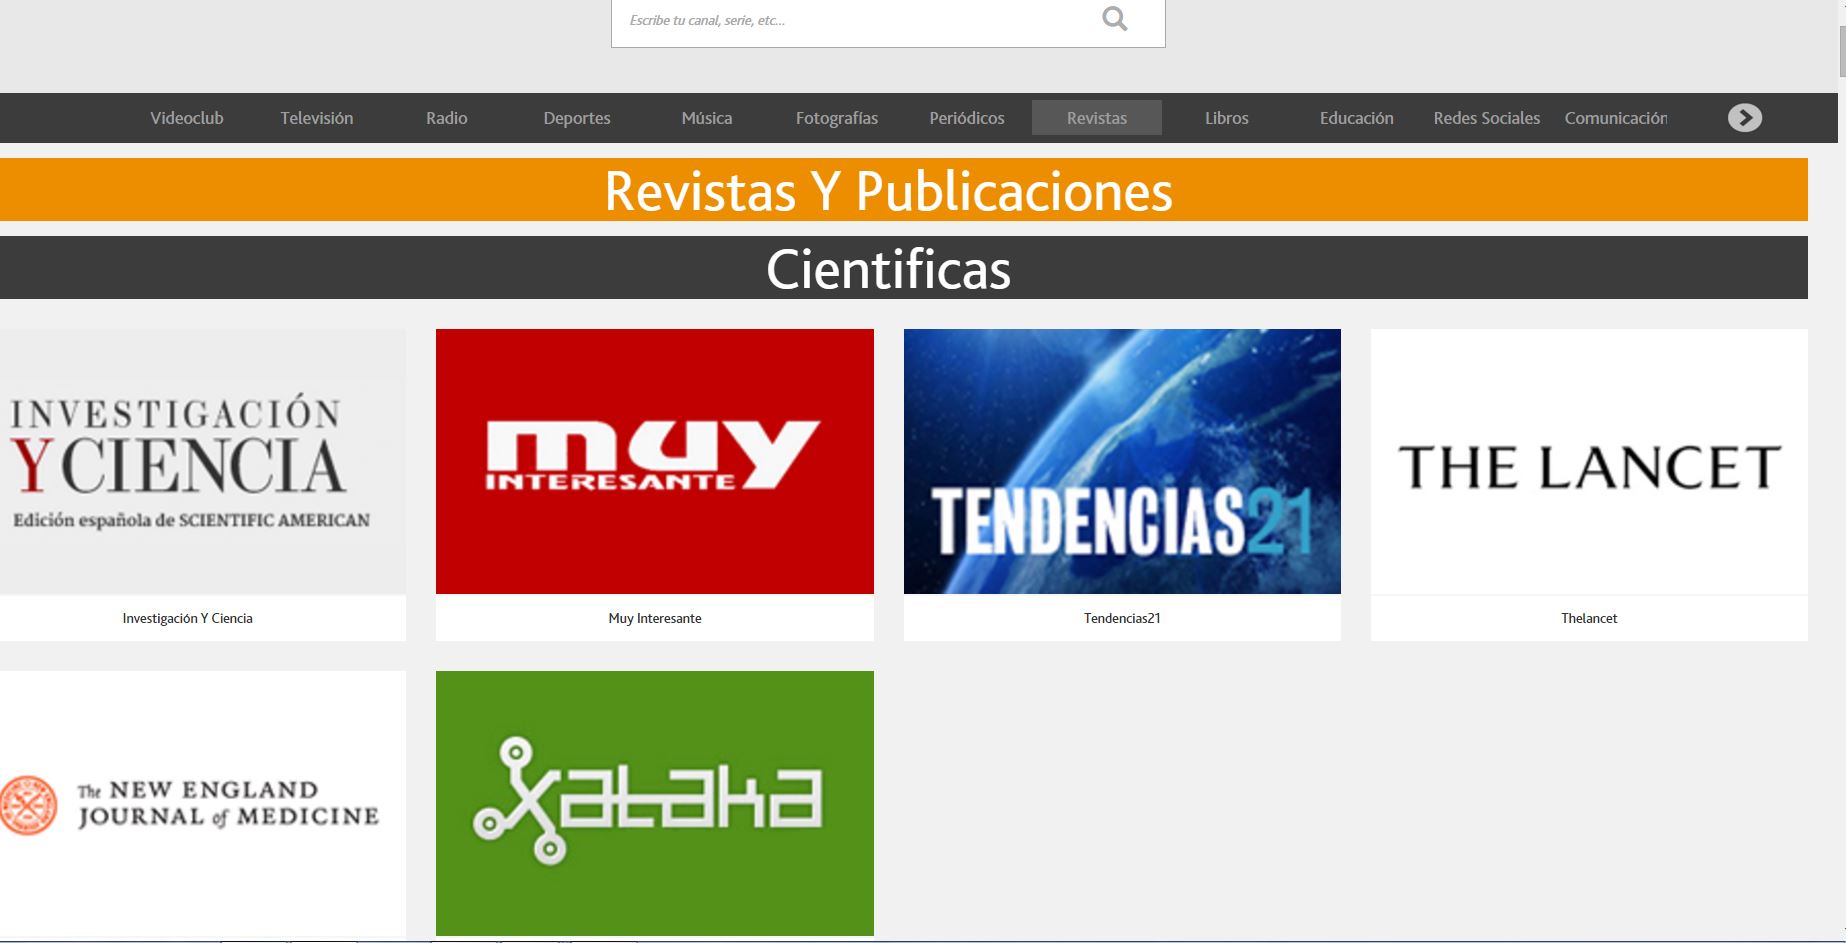 Canal de revistas científicas en Nimbo Televisión, donde figura Tendencias21. Foto: T21